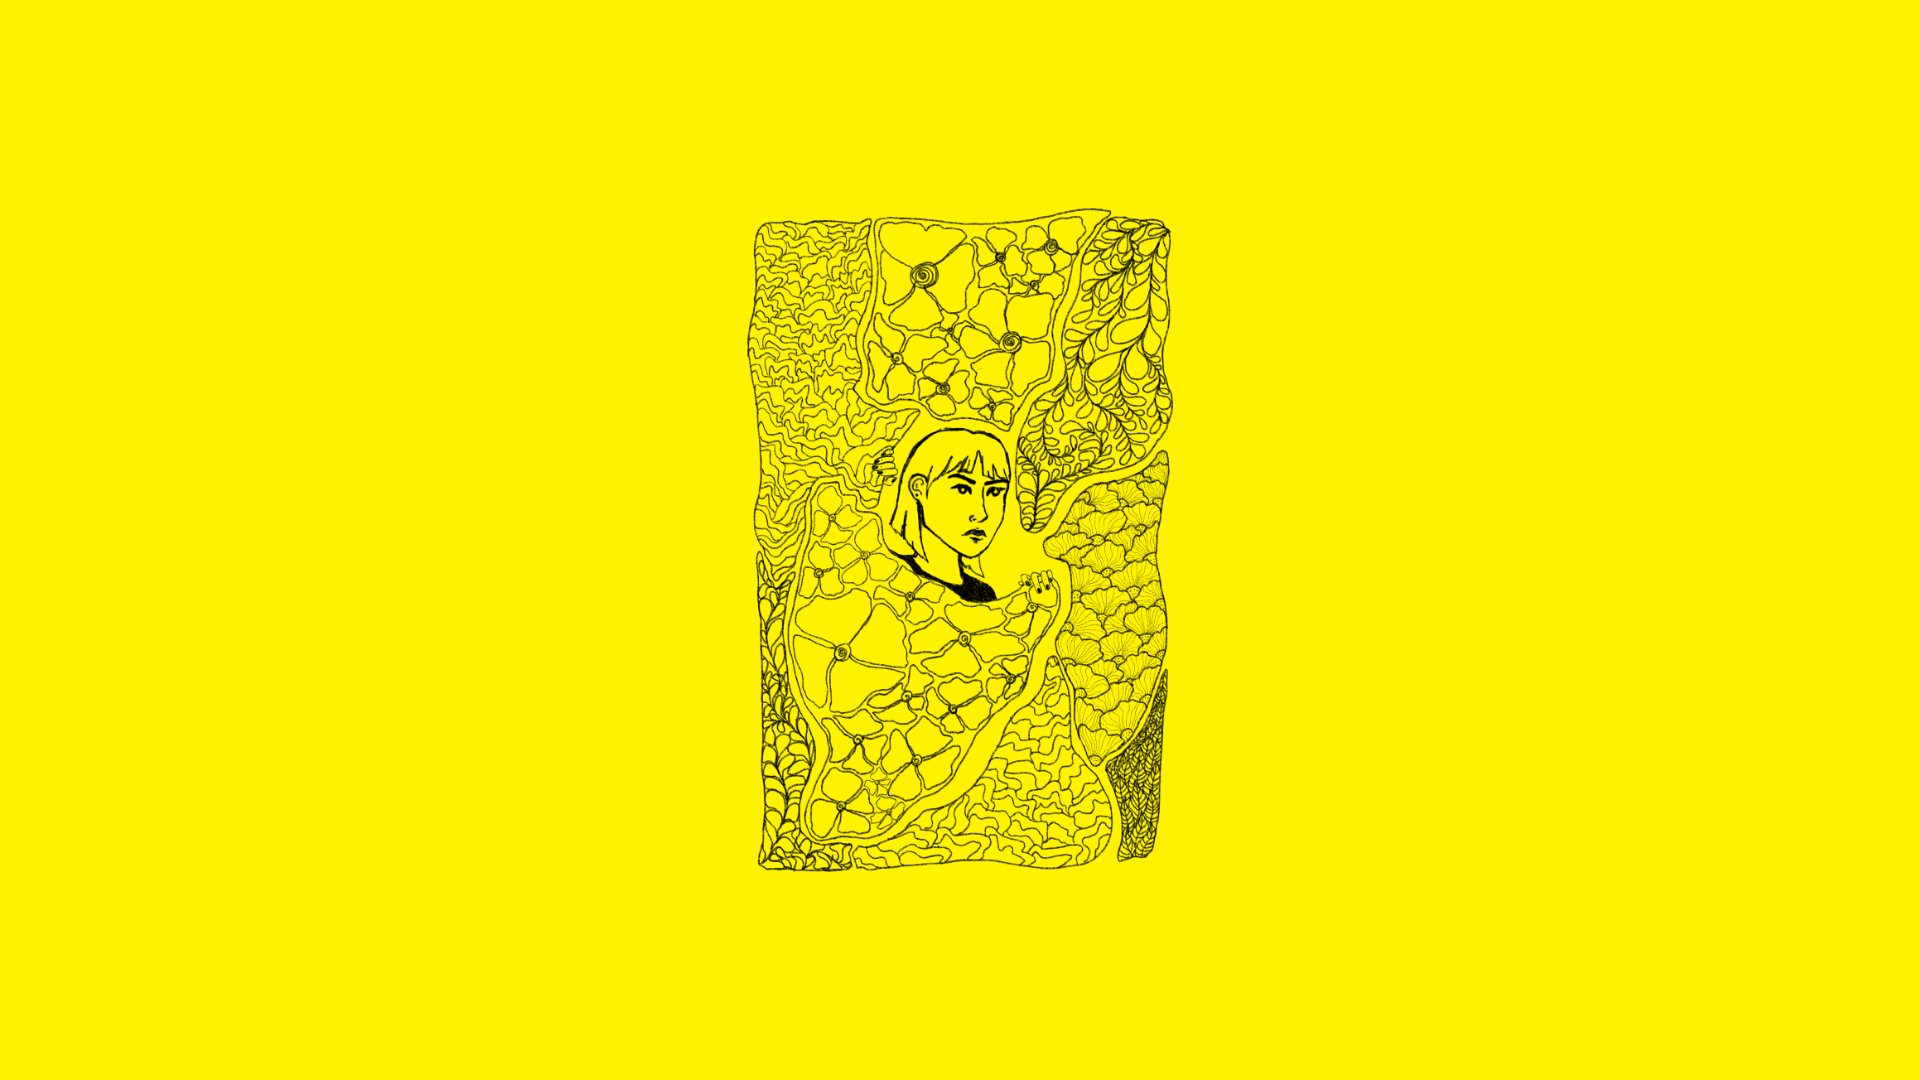 Czarny abstrakcyjny rysunek kobiety na żółtym tle